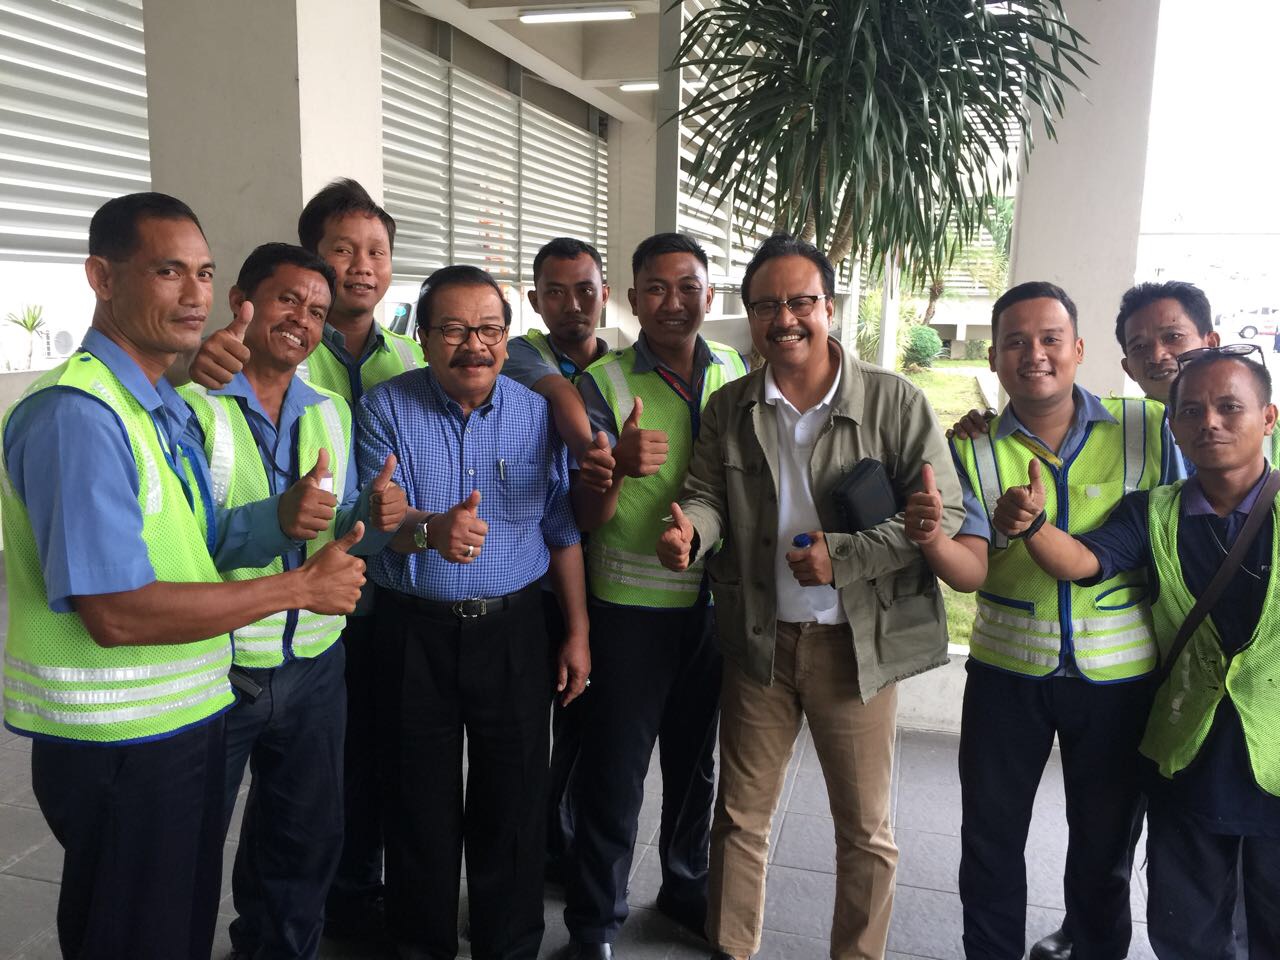 Gubernur Jatim Soekarwo (baju biru) dan Wagub Jatim Saifullah Yusuf (coklat) foto bersama petugas bandara Juanda setelah sama-sama satu pesawat dari Bali. (foto Ngopibareng.id)